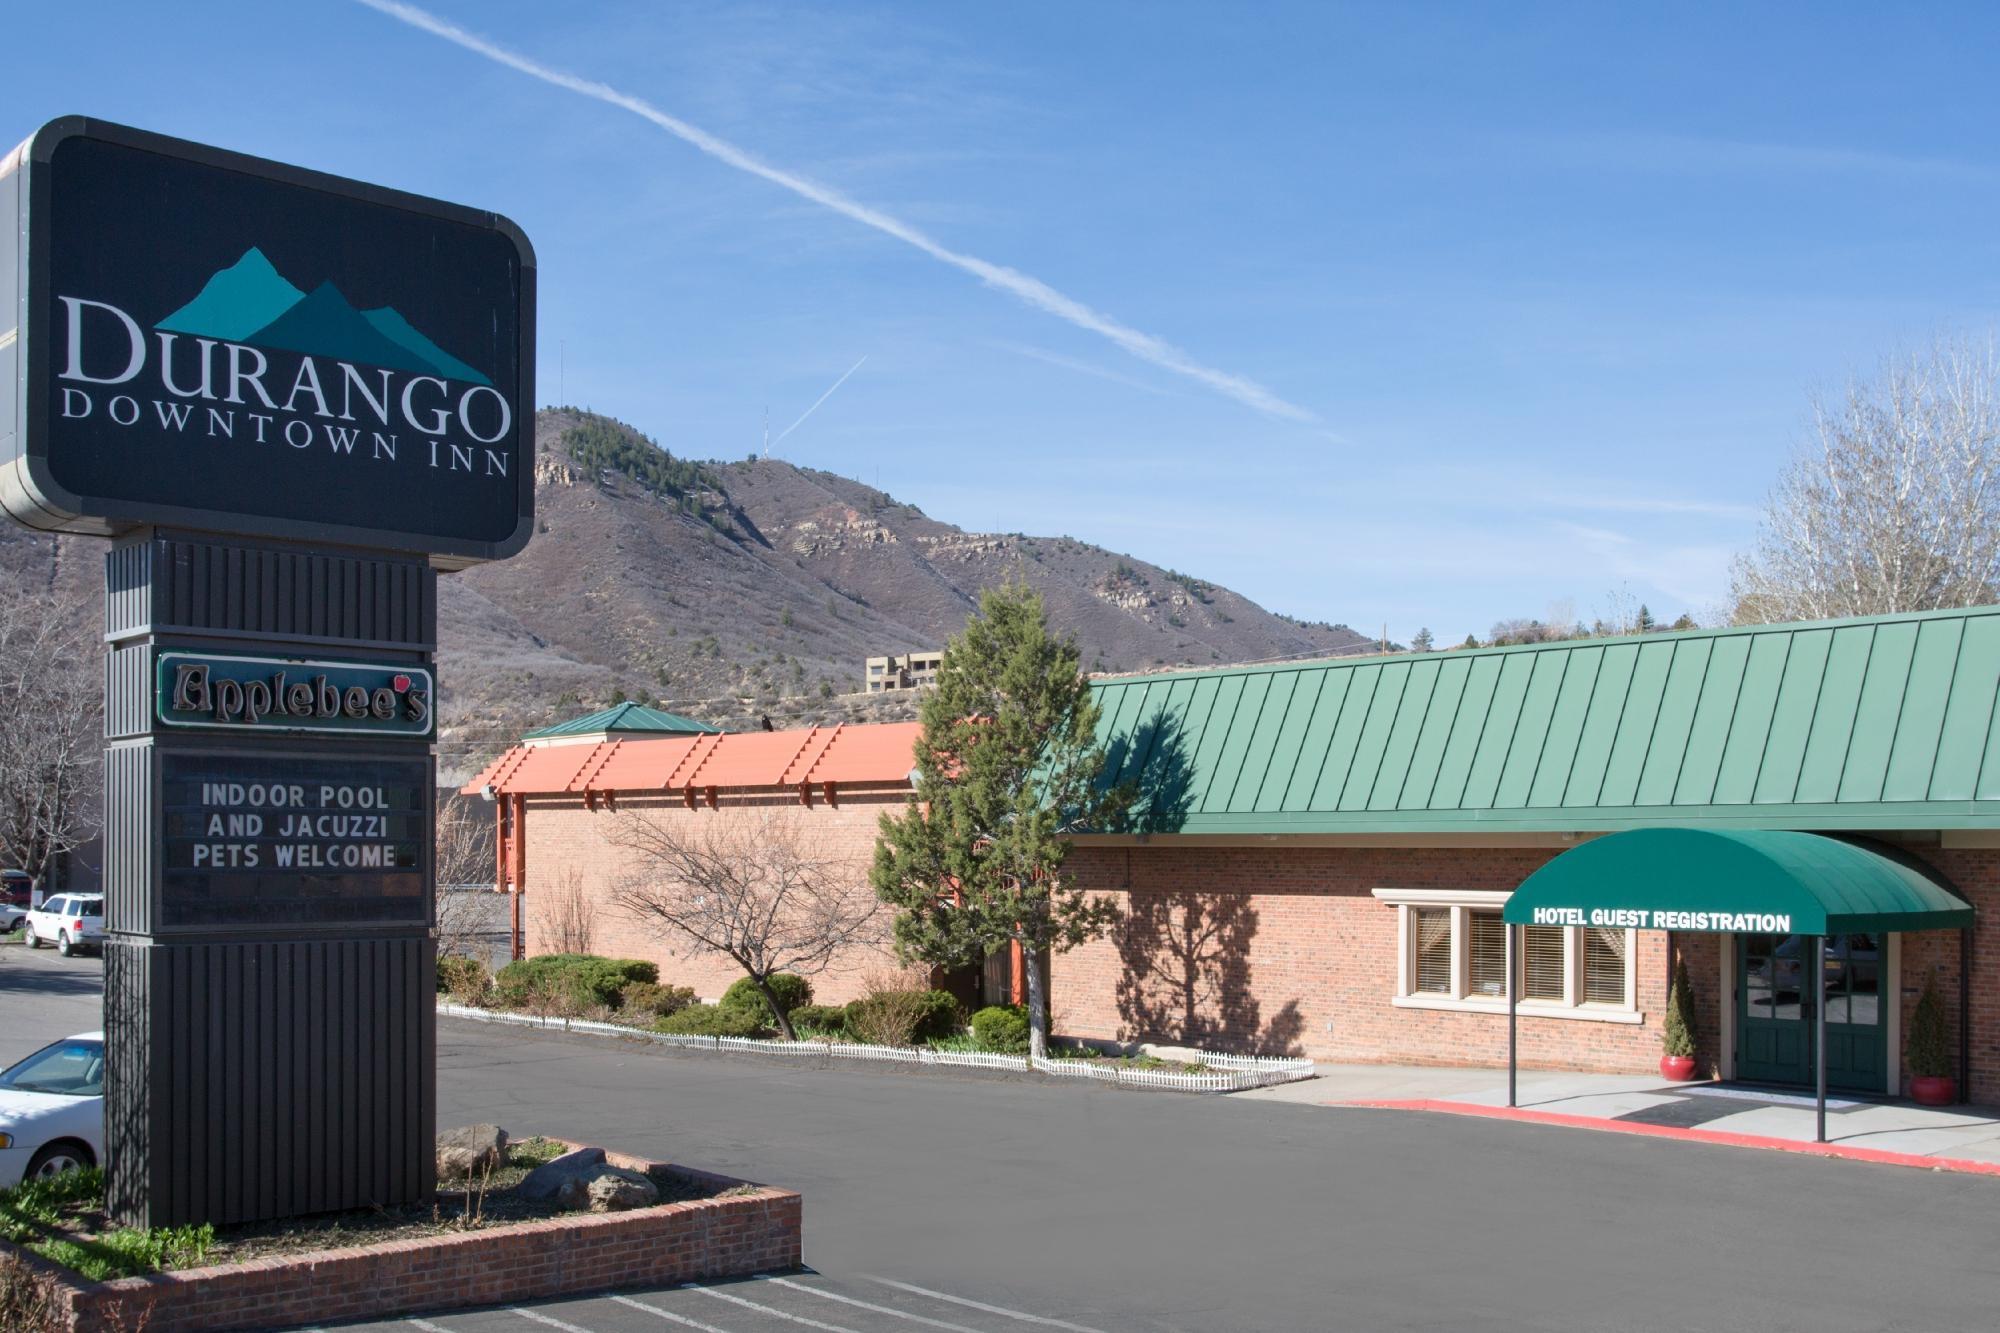 Photo of Durango Downtown Inn, Durango, CO